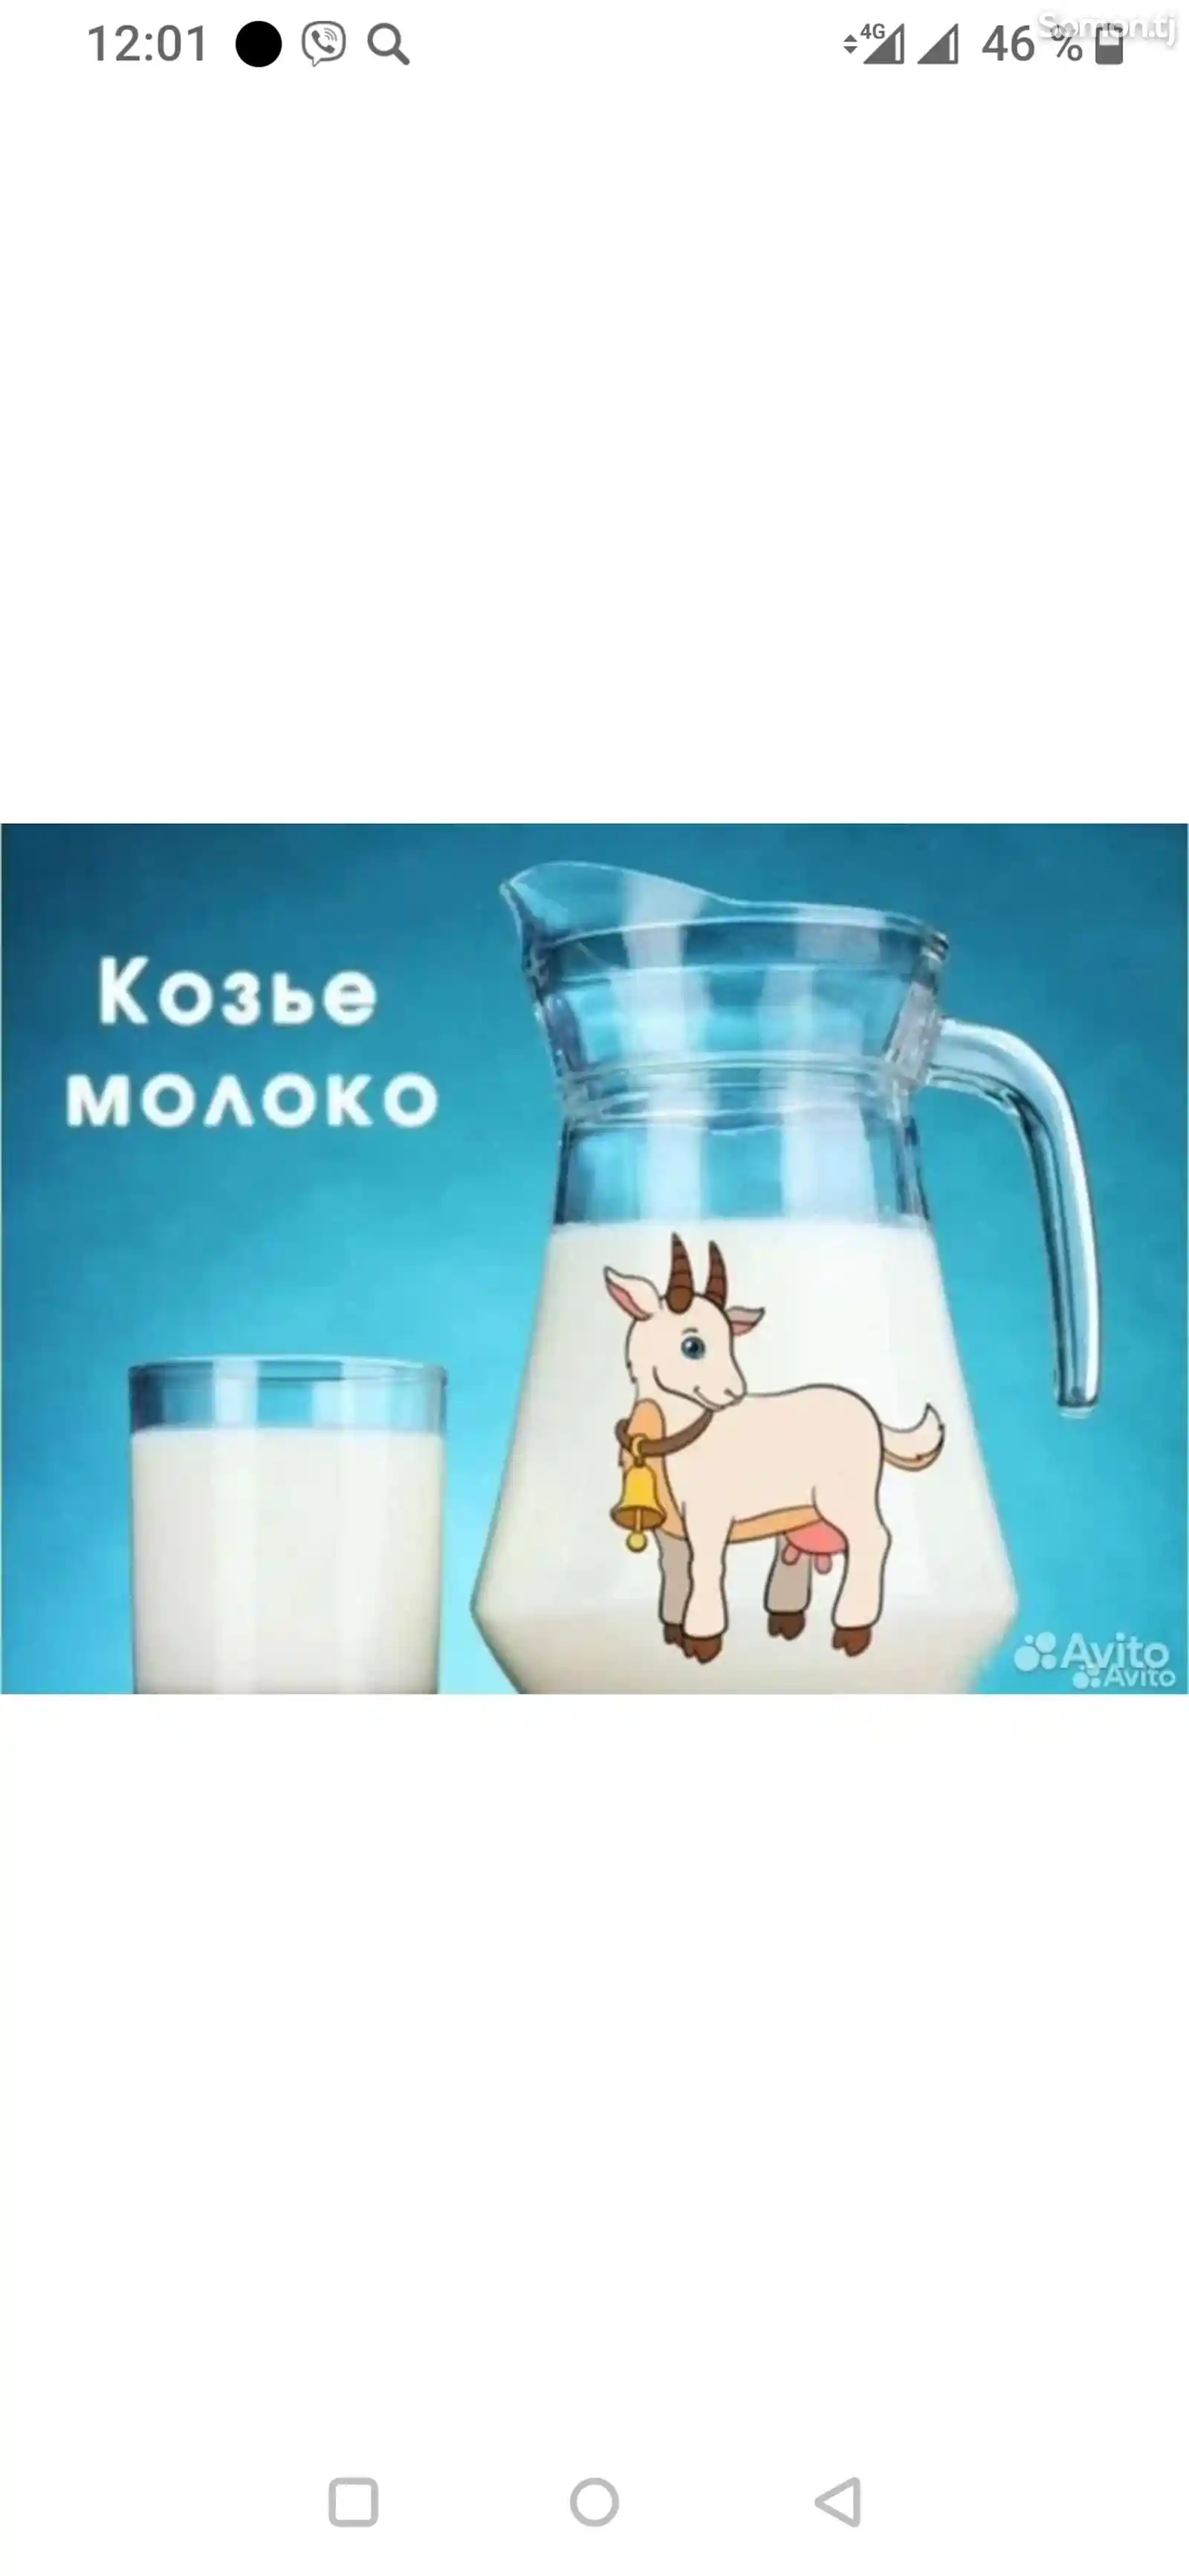 Козье молоко-1